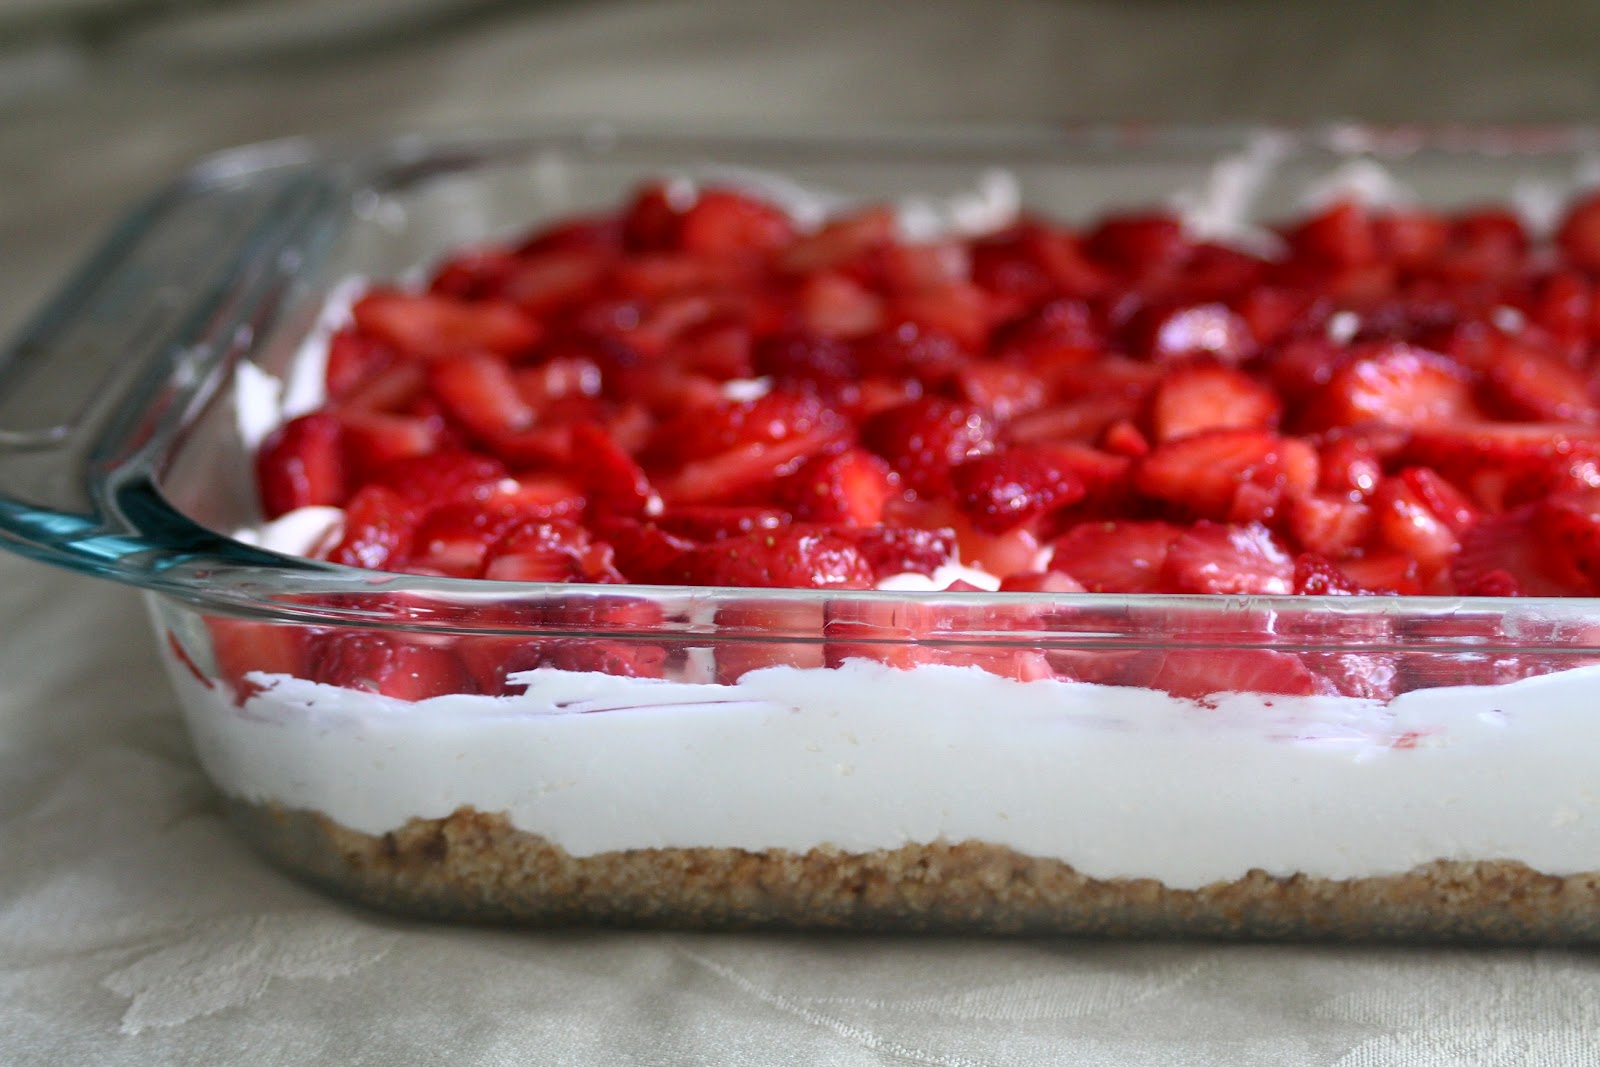 Baker Homemaker: Sensational Strawberry Cream Dessert